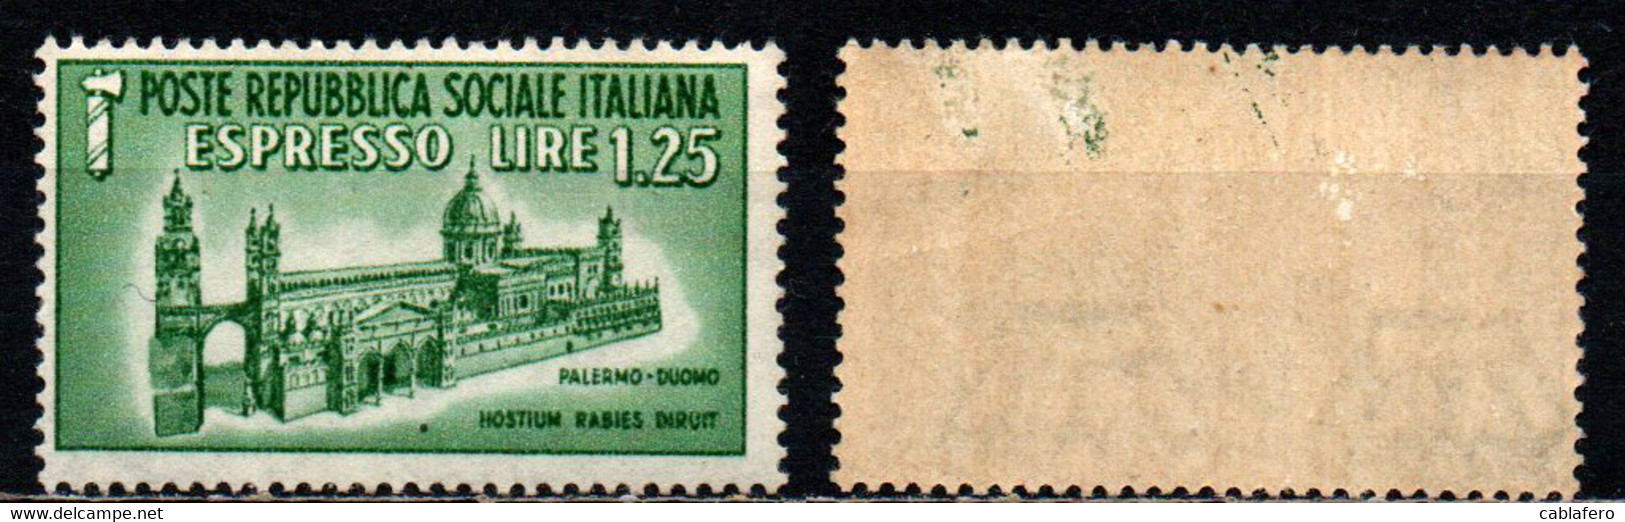 ITALIA RSI - 1944 - DUOMO DI PALERMO - MH - Express Mail